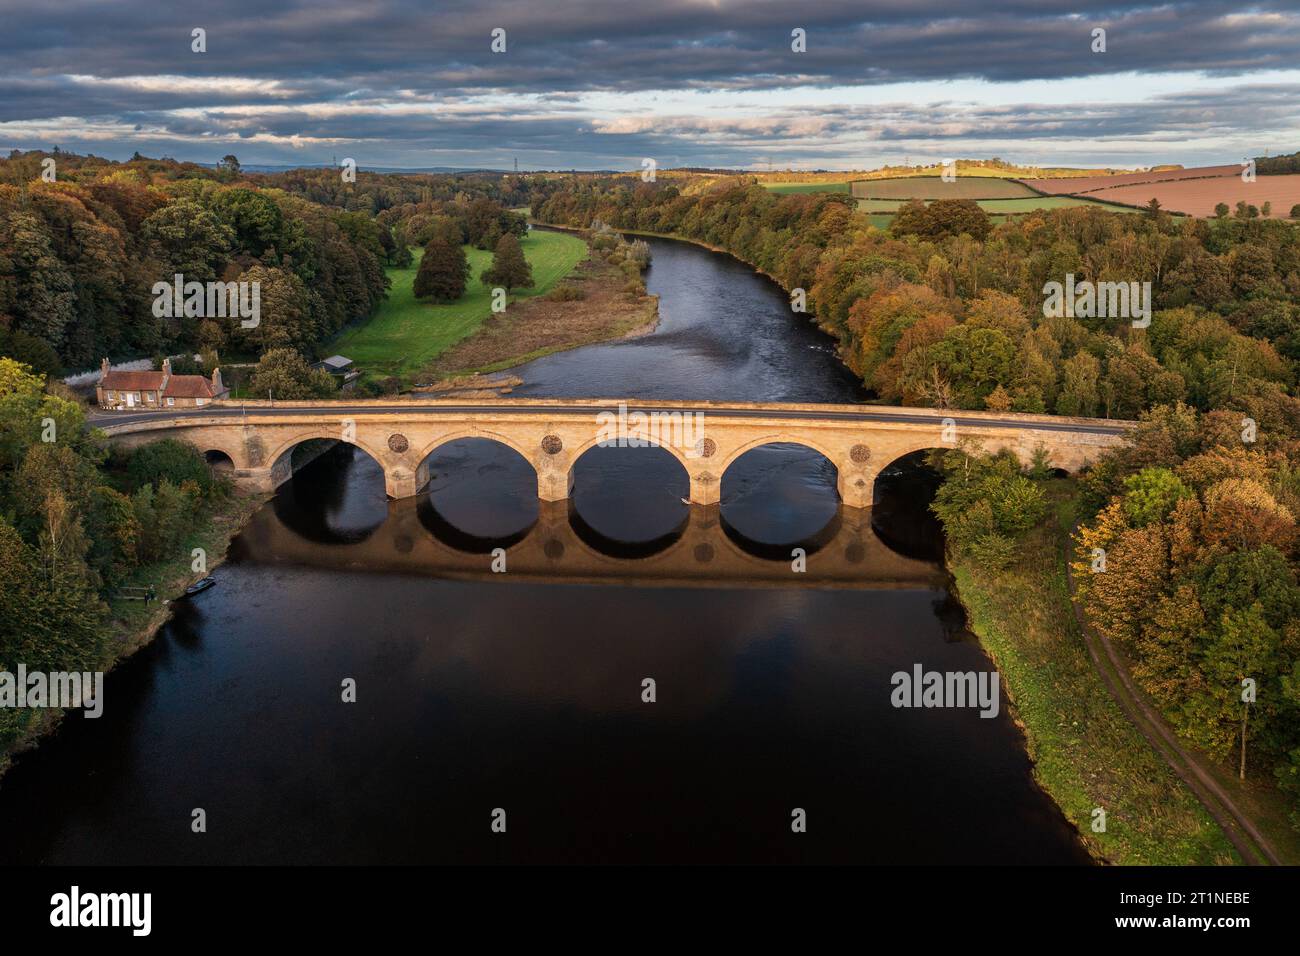 La frontière écossaise, Coldstream Bridge, traversant la rivière Tweed, Angleterre à droite Écosse à gauche. Banque D'Images